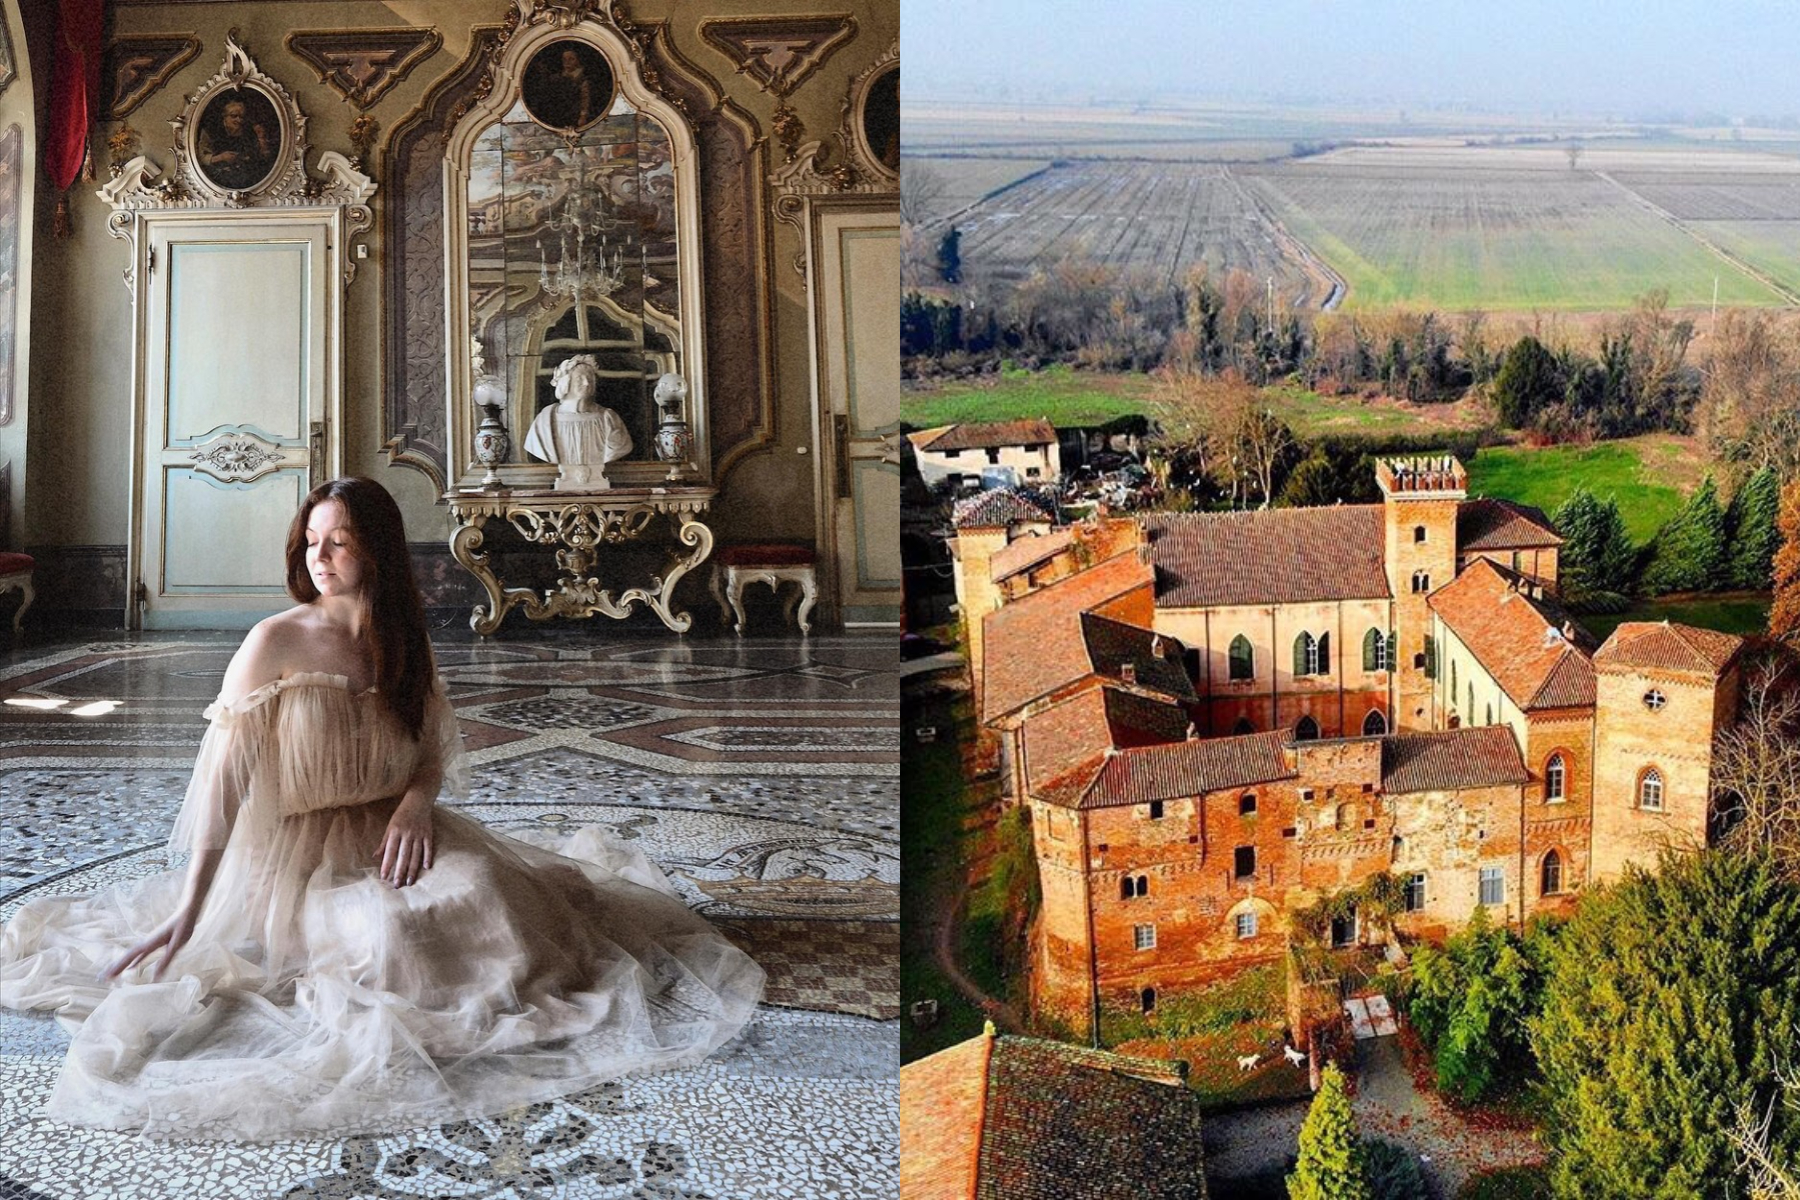 O italianca de 21 de ani spune ca a mostenit un castel bantuit, vechi de 900 de ani. Experientele traite de Lodovica